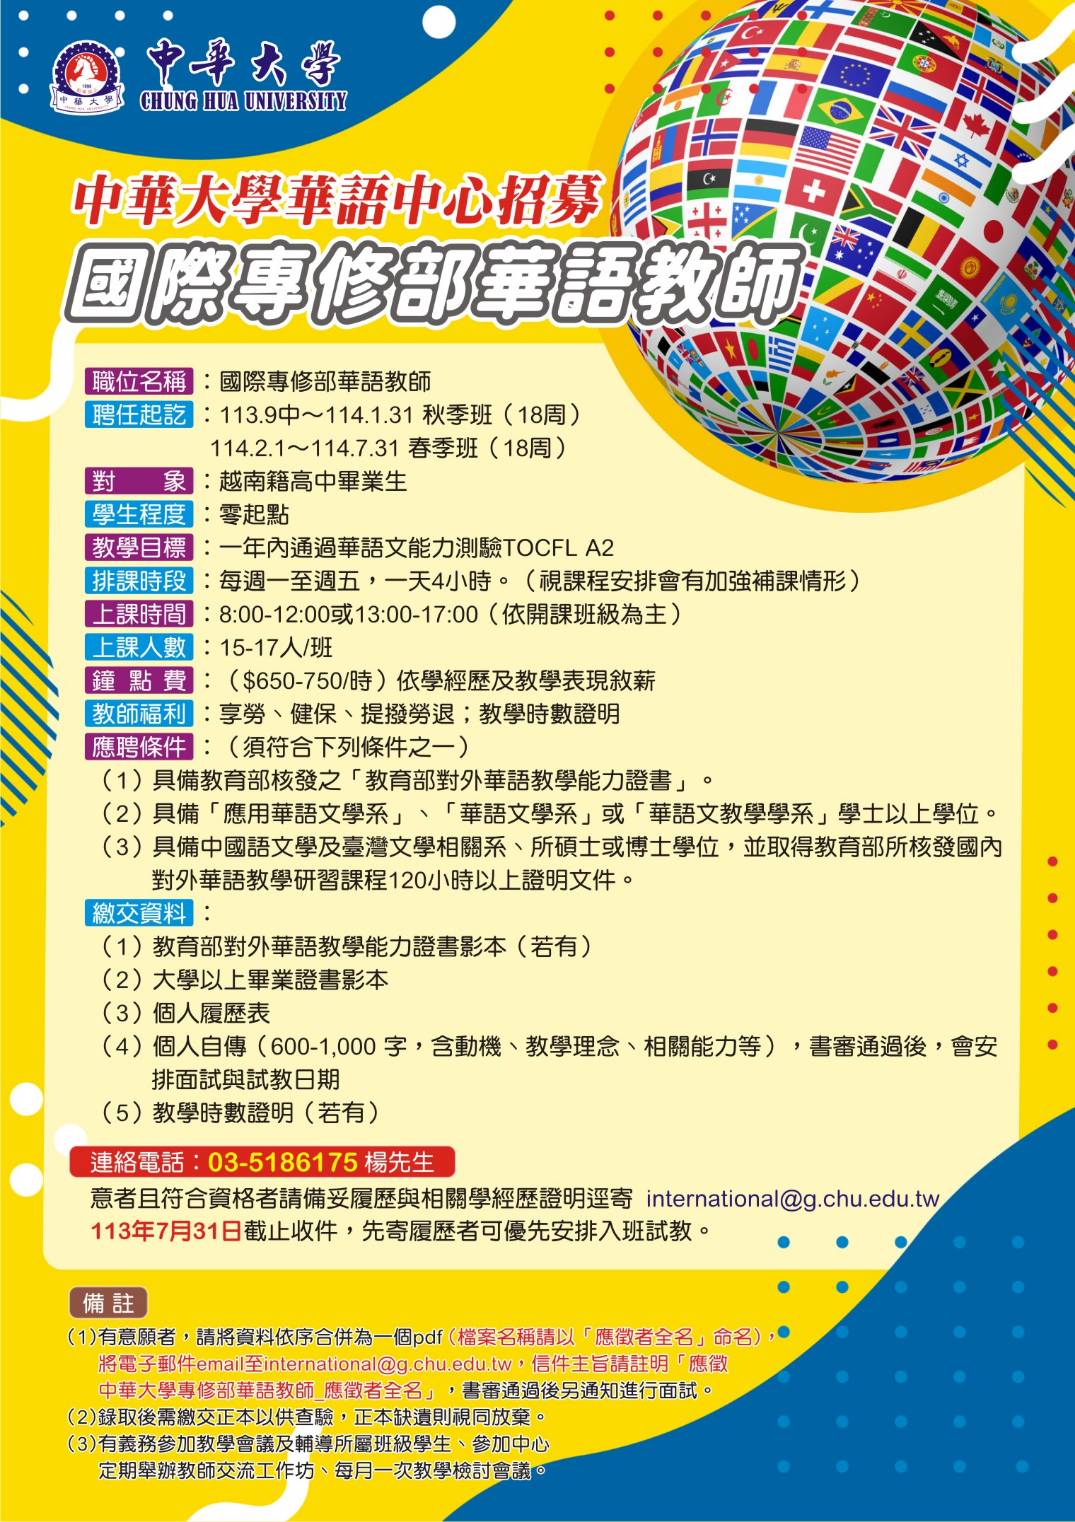 中華大學（Chung Hua University）華語中心徵聘國際專修部華語教師數名